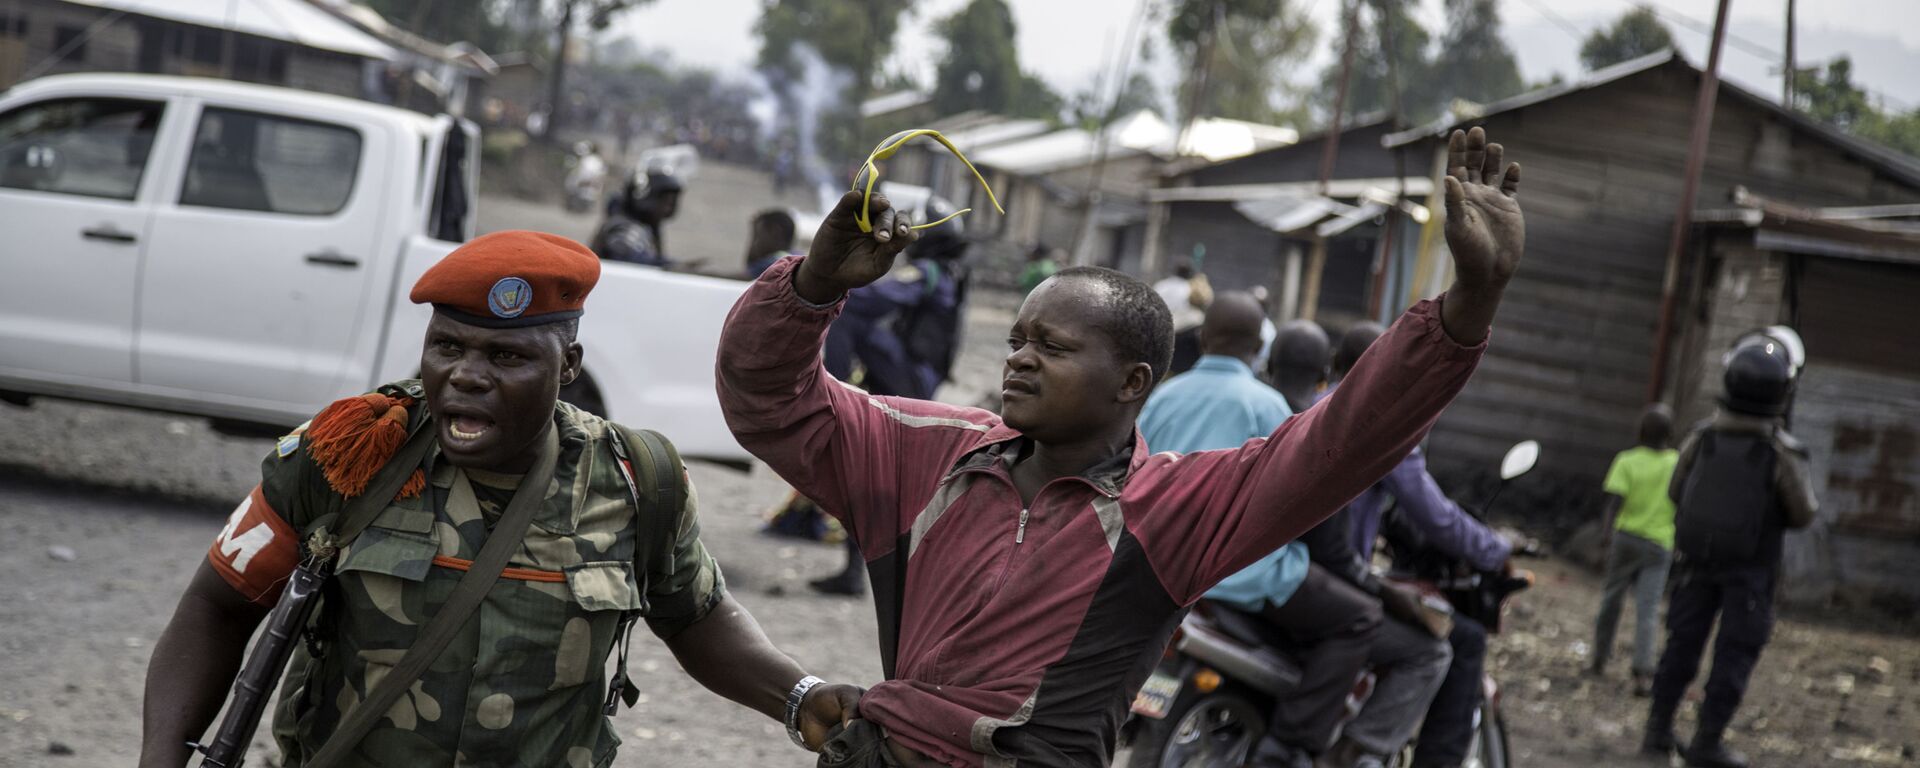 ضابط يلقي القبض على رجل حاول إغلاق الطريق بالحجارة، في حي ماجينغو في غوما، شرق جمهورية الكونغو الديمقراطية، في 19 ديسمبر/ كانون الأول عام 2016، - سبوتنيك عربي, 1920, 22.05.2022